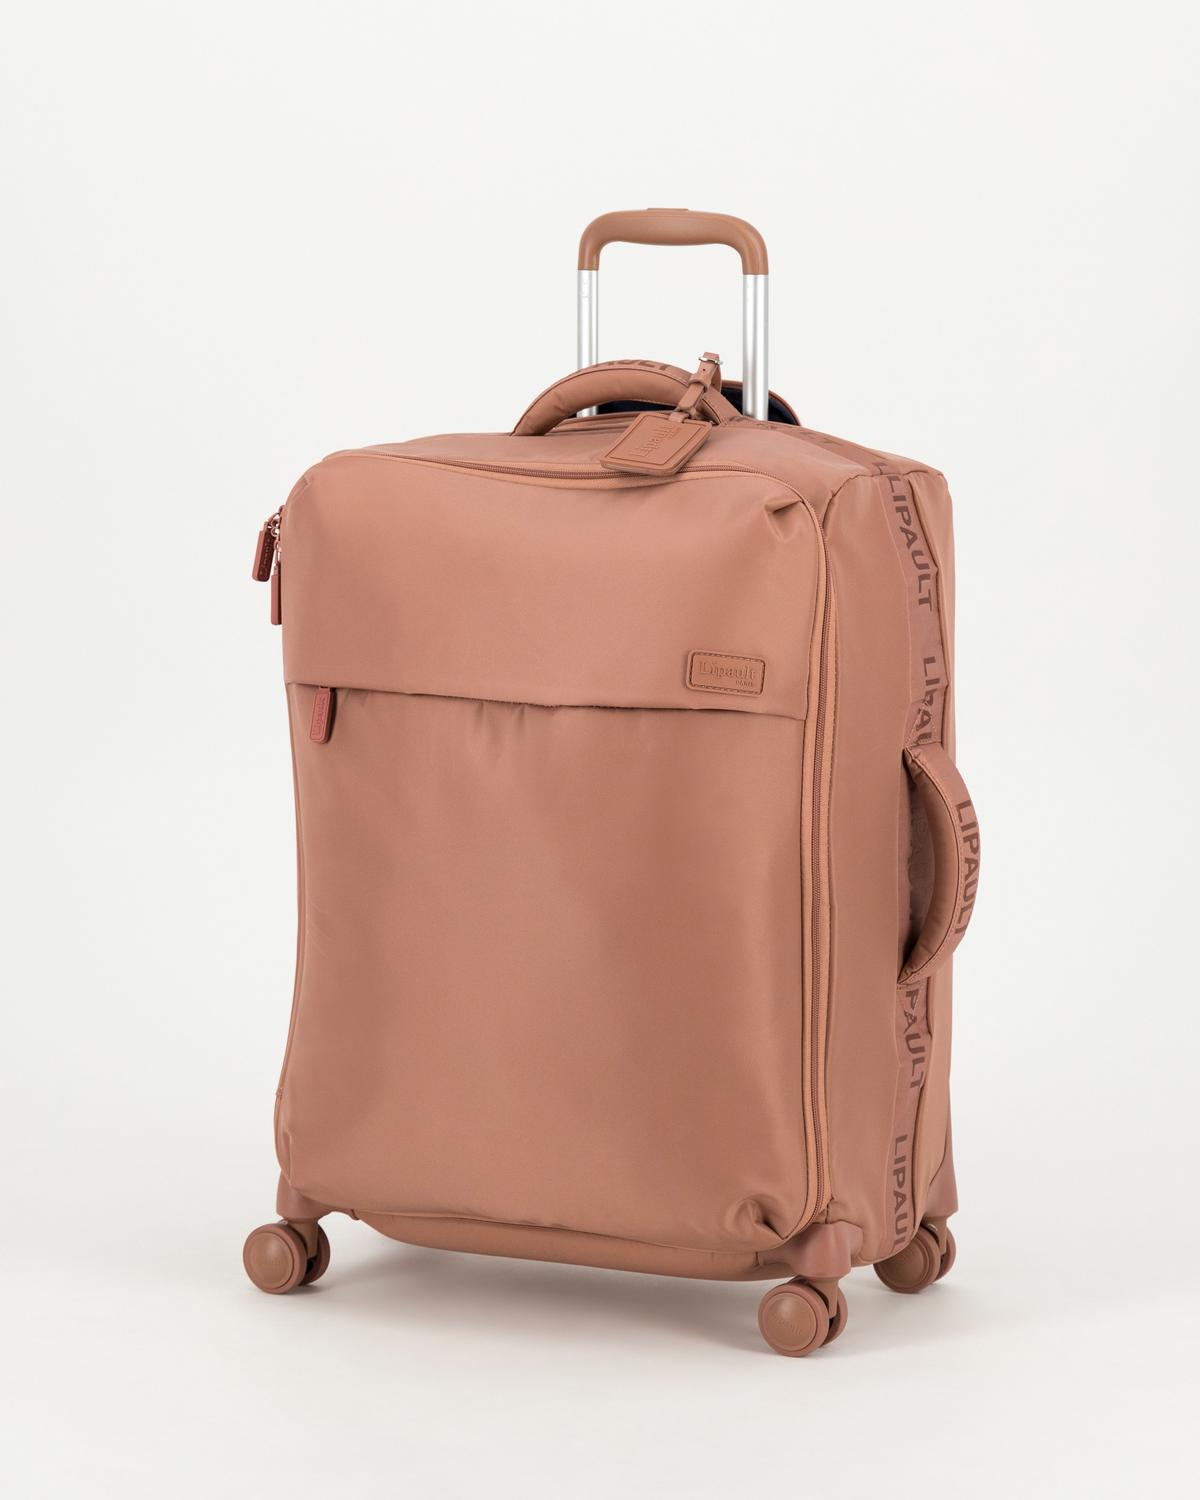 Lipault Plume Medium Trip Luggage Bag -  rose